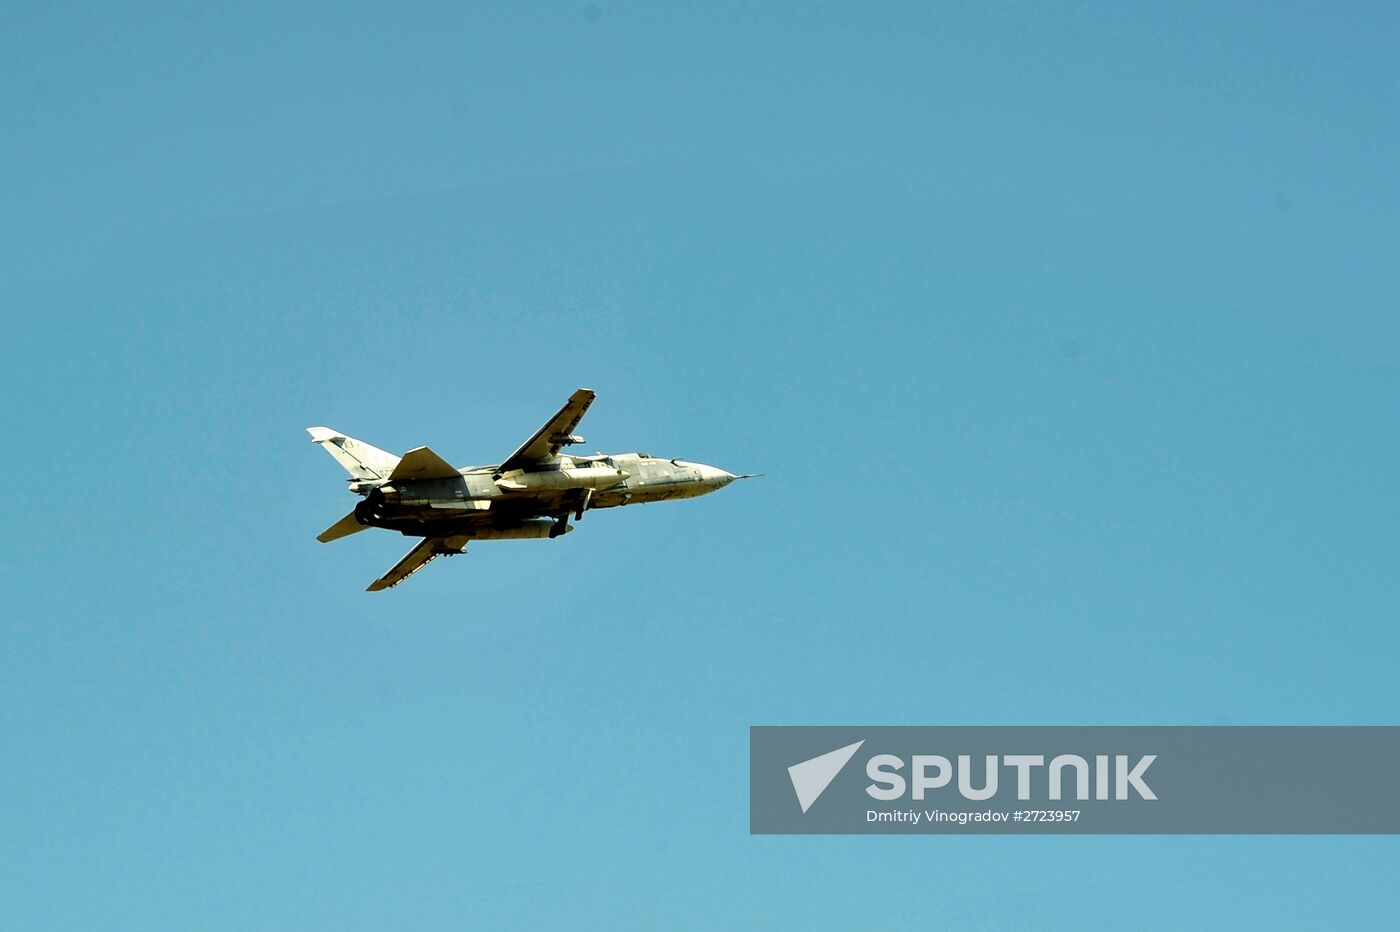 Russian aircract at Hemeimeem Air Base in Syria